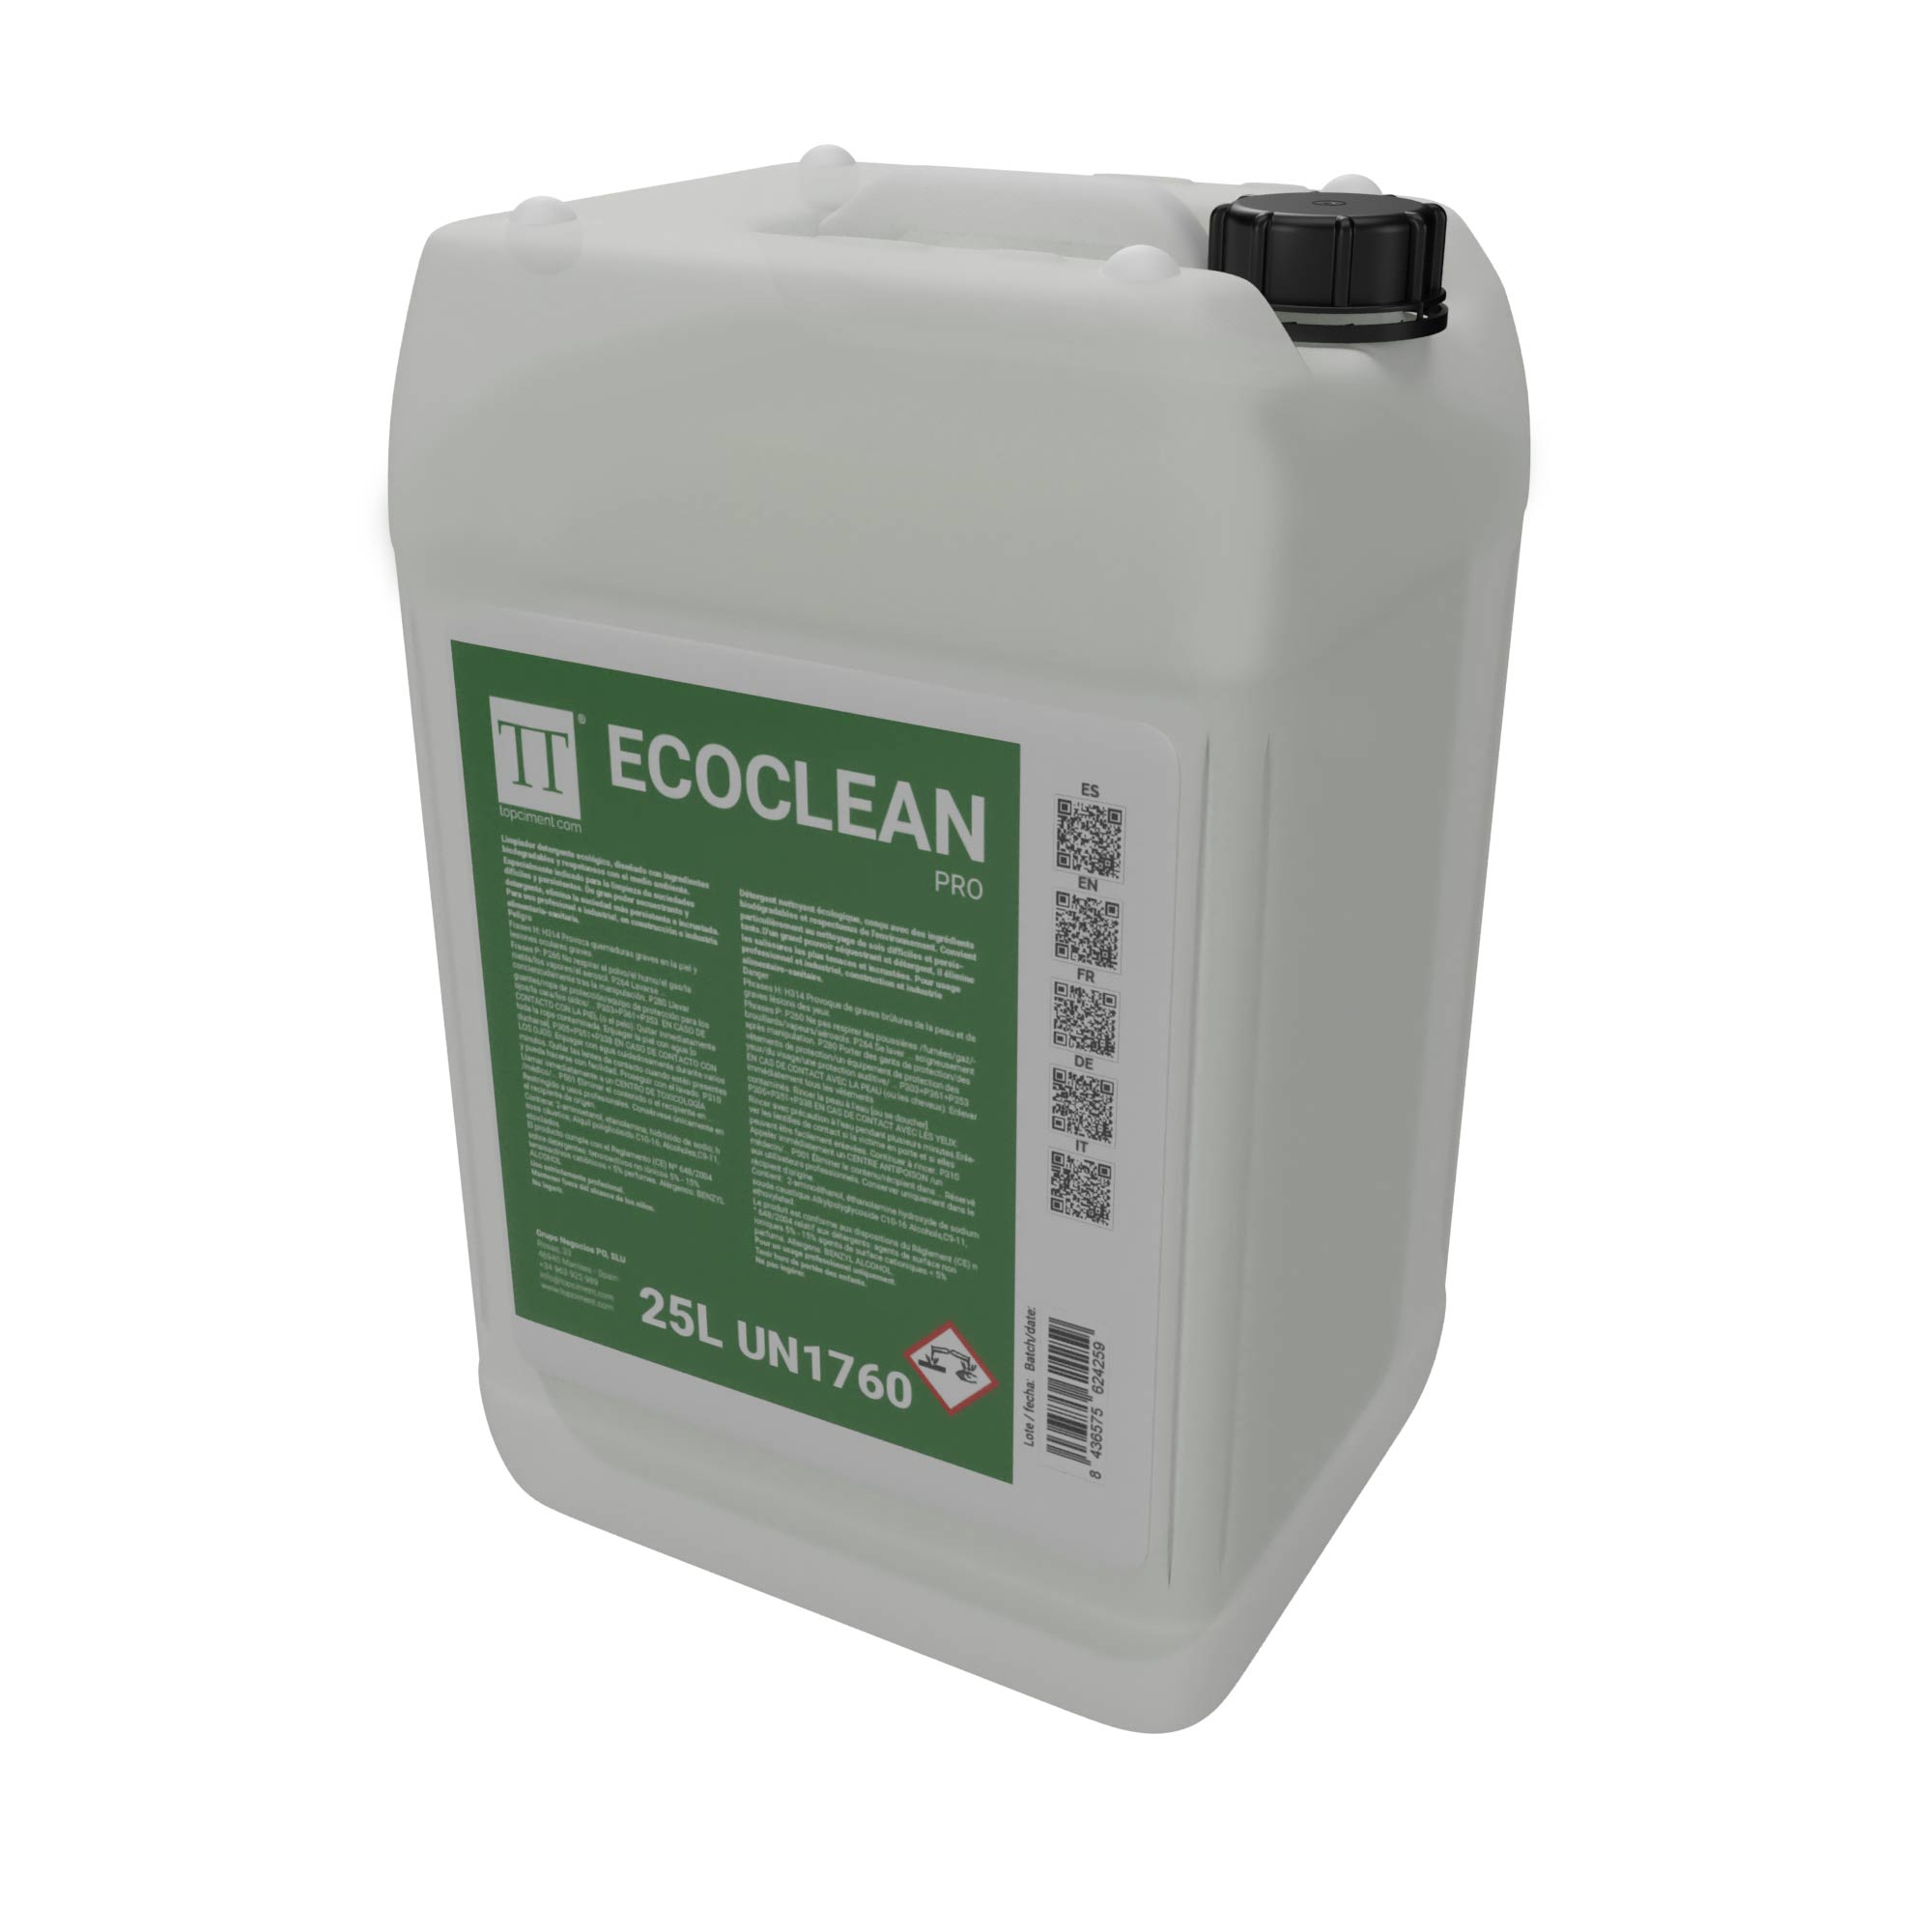 Ecoclean Pro 25L ADR